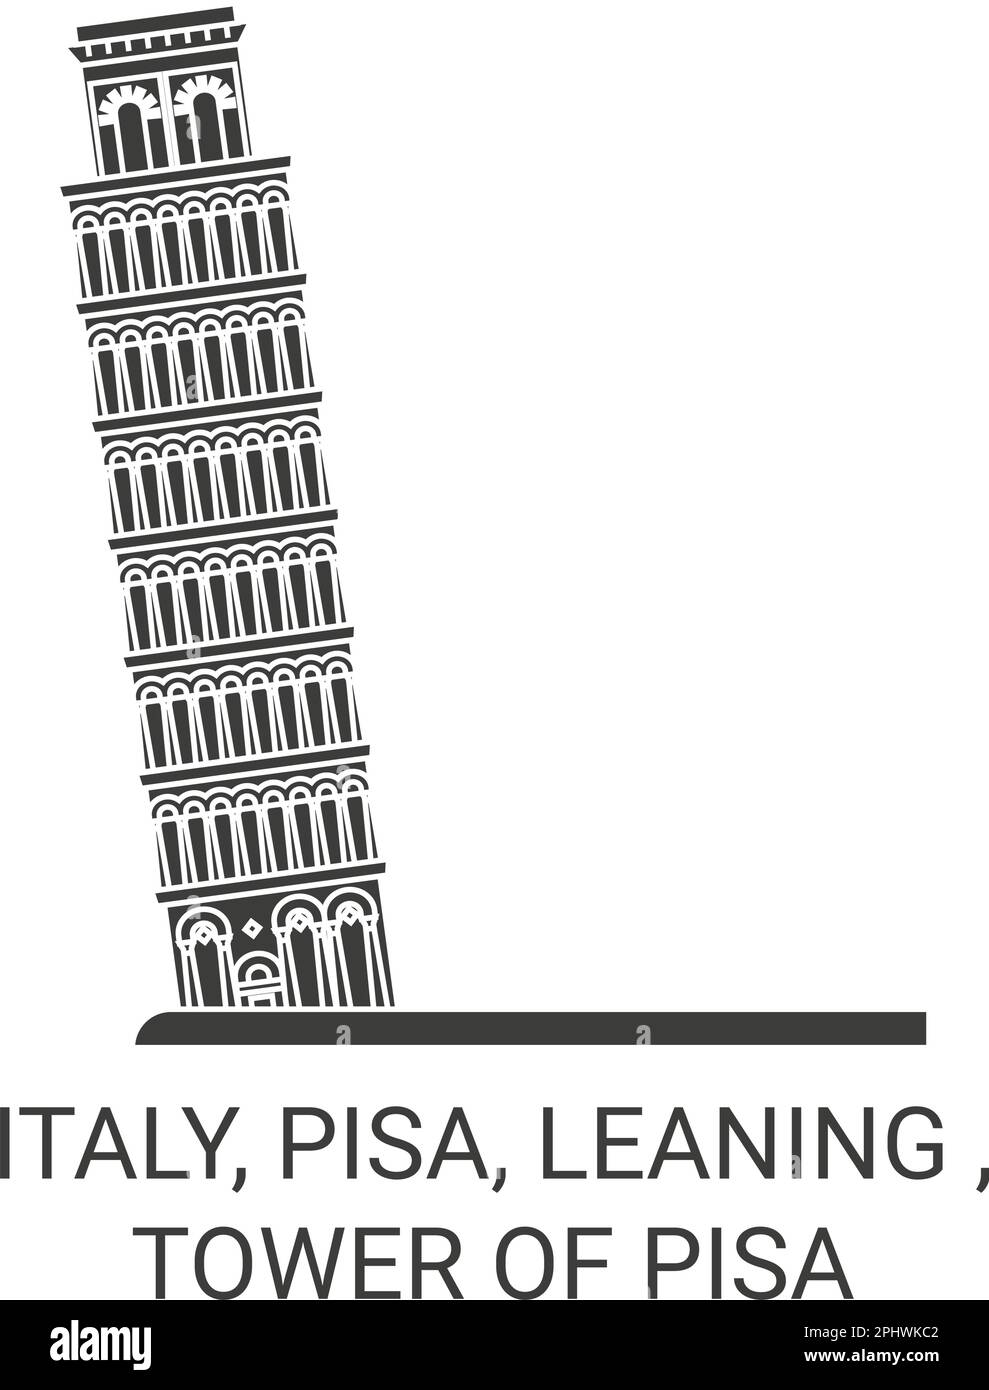 Italien, Pisa, Schiefen, Turm von Pisa Reise-Wahrzeichen-Vektordarstellung Stock Vektor